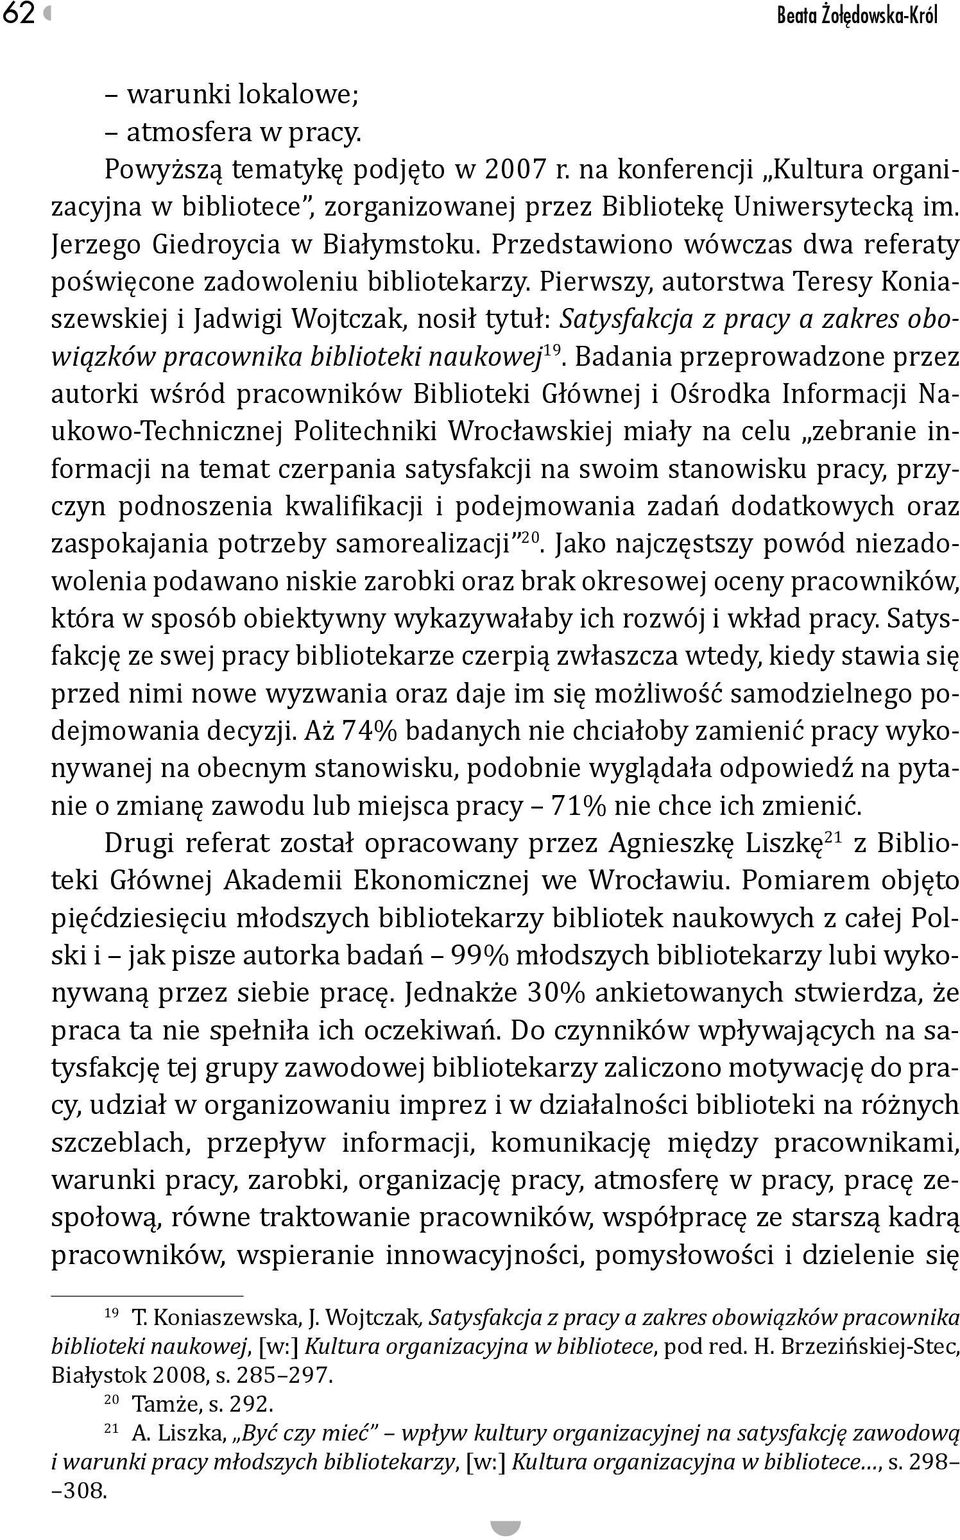 Pierwszy, autorstwa Teresy Koniaszewskiej i Jadwigi Wojtczak, nosił tytuł: Satysfakcja z pracy a zakres obowiązków pracownika biblioteki naukowej 19.